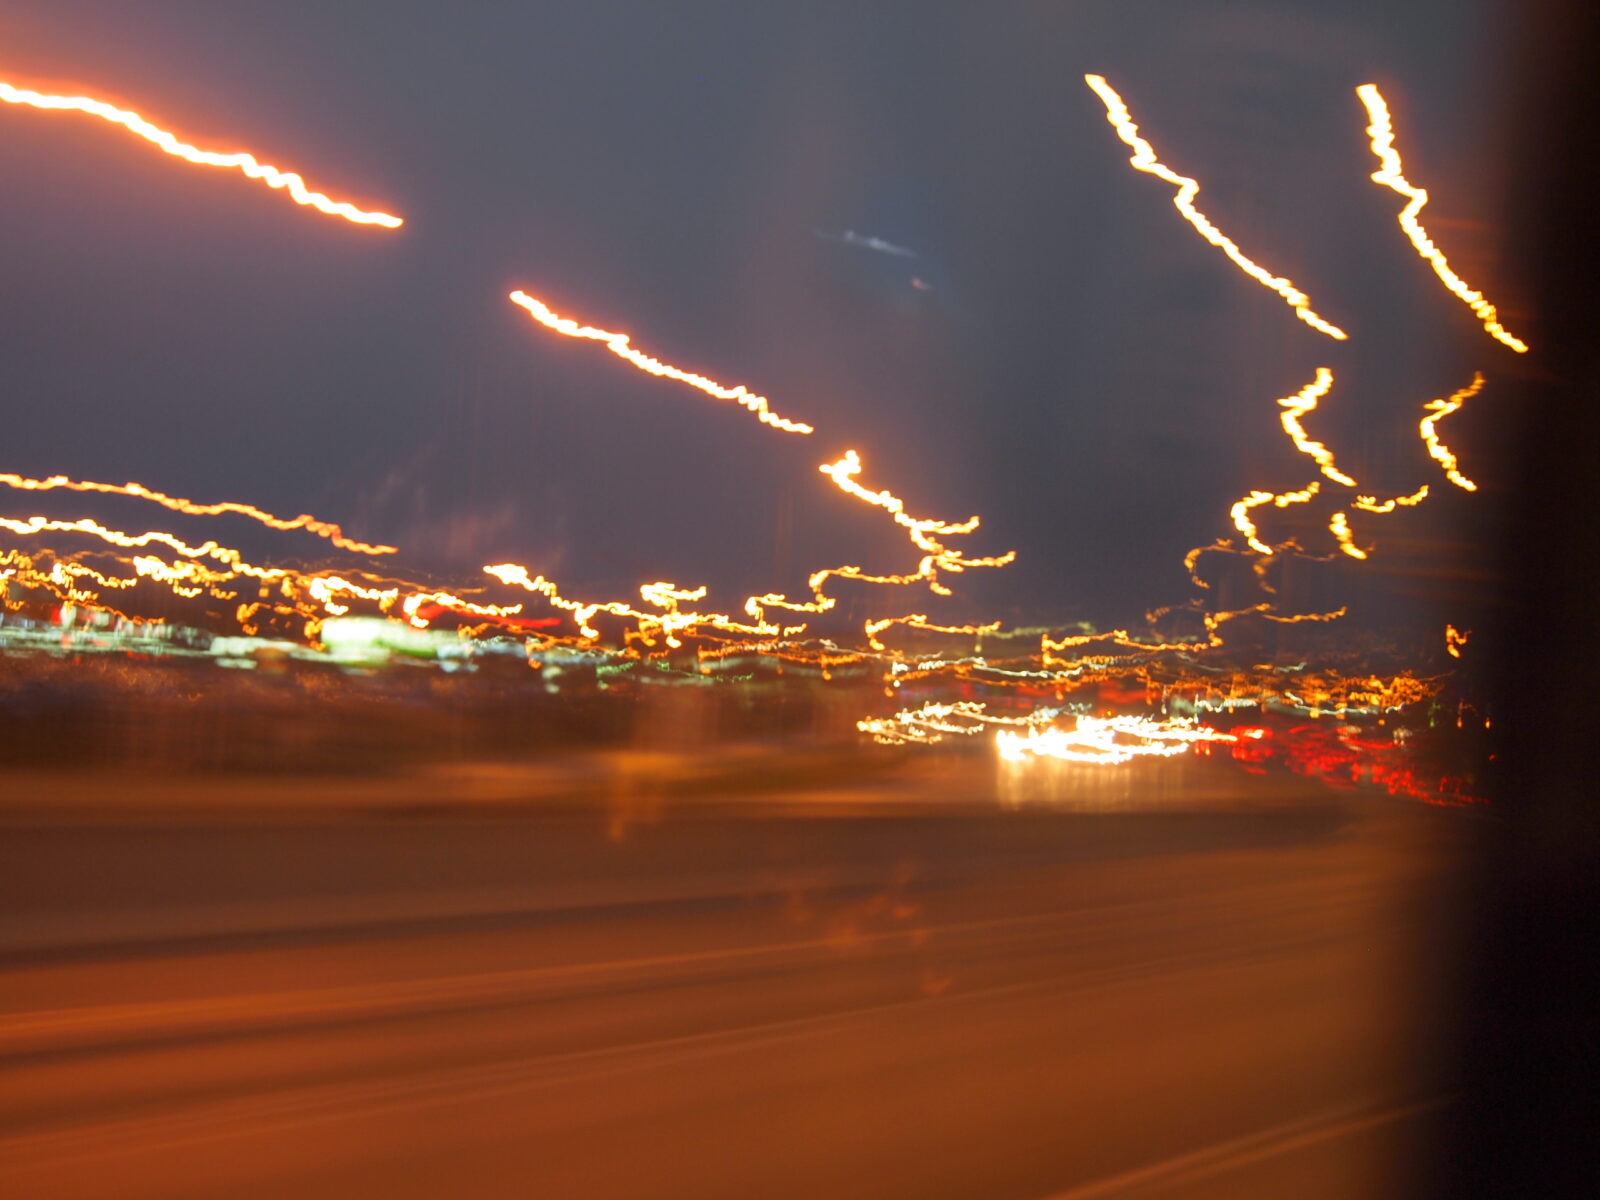 La imagen muestra luces distorsionadas por un vehículo en movimiento